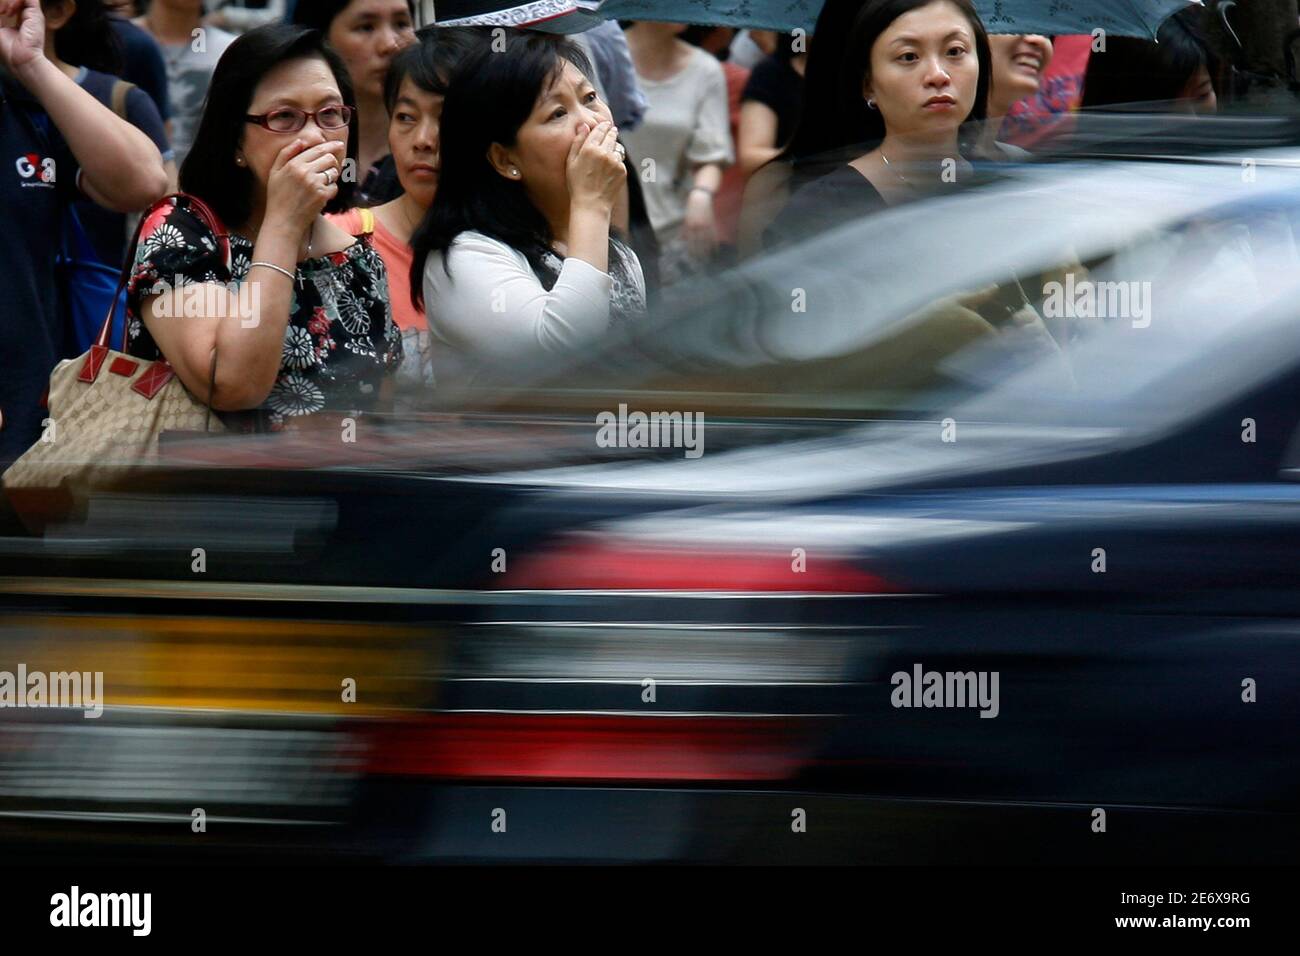 Die Käufer bedecken ihre Nase und Münder in der Nähe eines vorbeifahrenden Autos, während sie warten, um eine Straße im Einkaufsviertel Causeway Bay in Hongkong zu überqueren, 15. Juli 2009. Die städtische Umweltverschmutzung in Hongkong ist in den letzten vier Jahren sechsmal angestiegen, aber Experten sagen, dass lokale Fahrzeuge mehr schuld sind als Smog, der aus den Produktionsbändern Südchinas hereingeweht wurde, berichtete eine Zeitung am Mittwoch. REUTERS/Bobby Yip (CHINA POLITICS BUSINESS ENVIRONMENT) Stockfoto